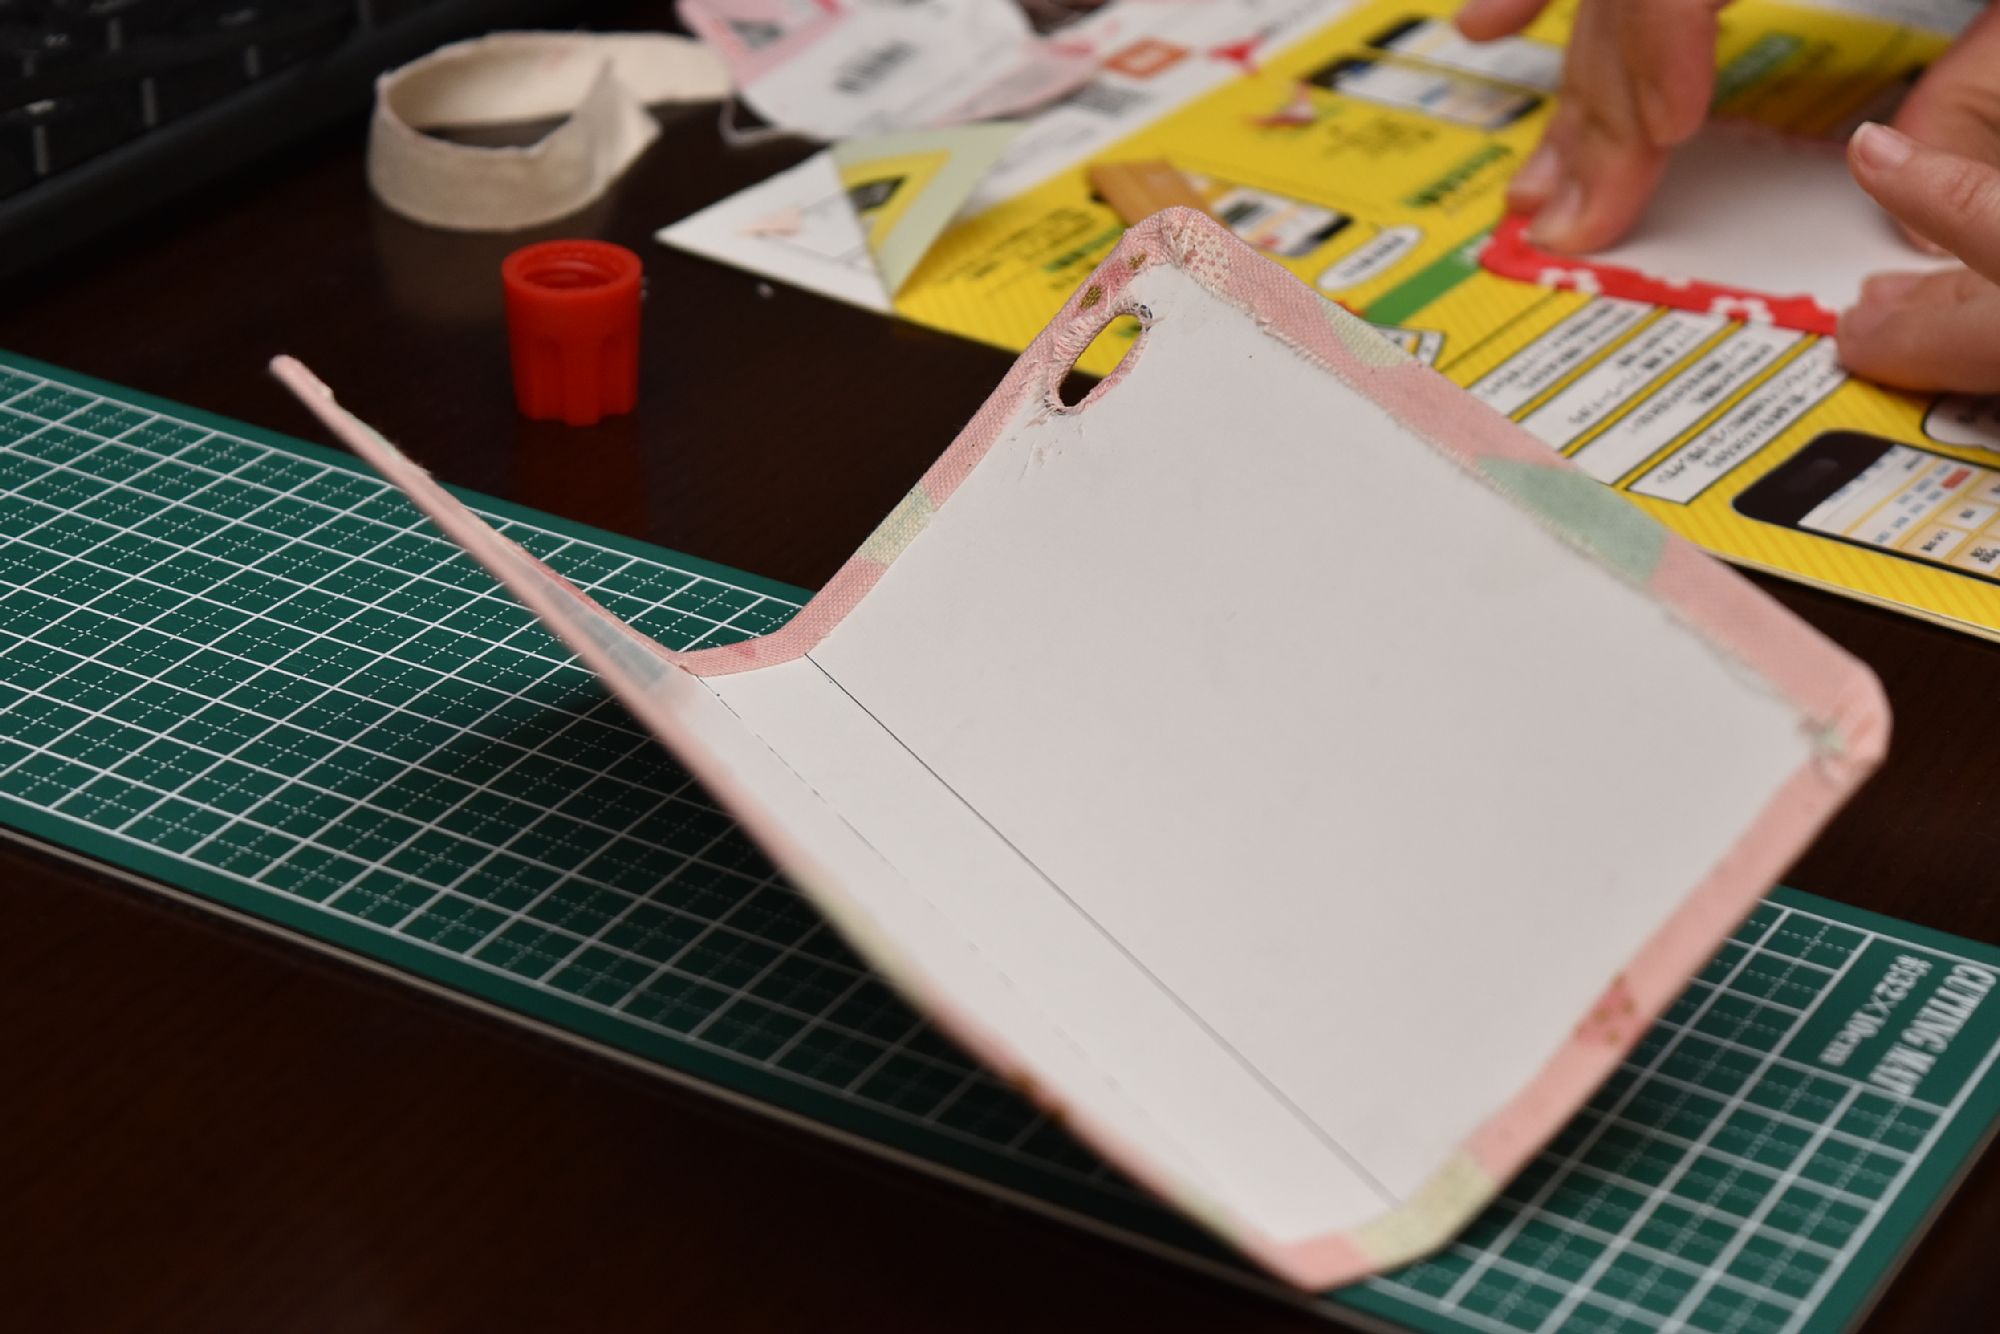 スマホのガラス画面が割れるのを防ぎたい 厚紙と可愛い布を使ったiphone6sの手帳型ケースを作ってみました 初心者ハンドメイドの作り方なら Momo工房ブログ